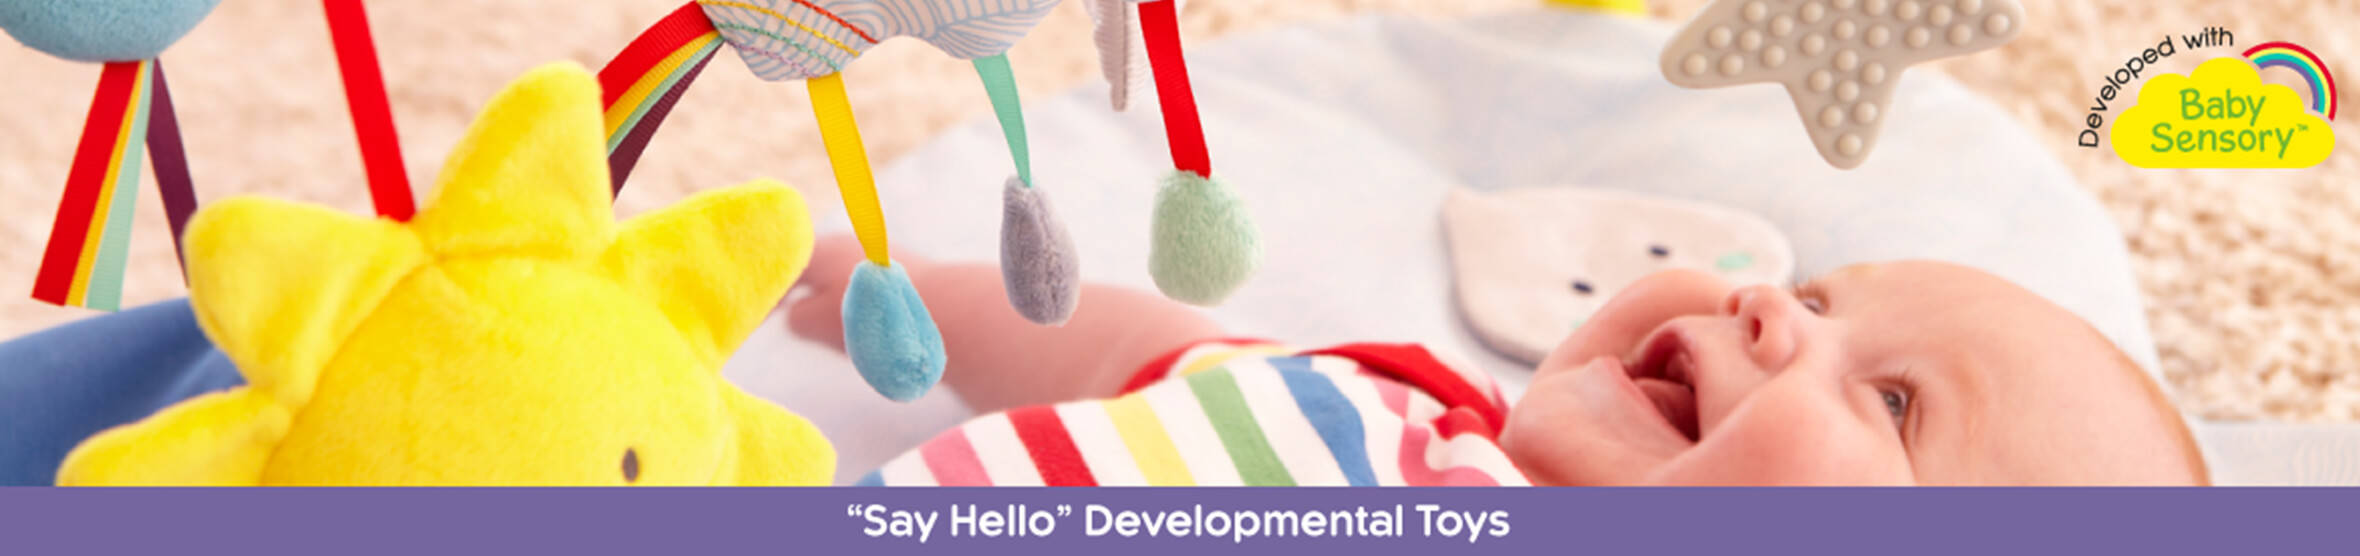 East Coast Nursery Developmental Toys